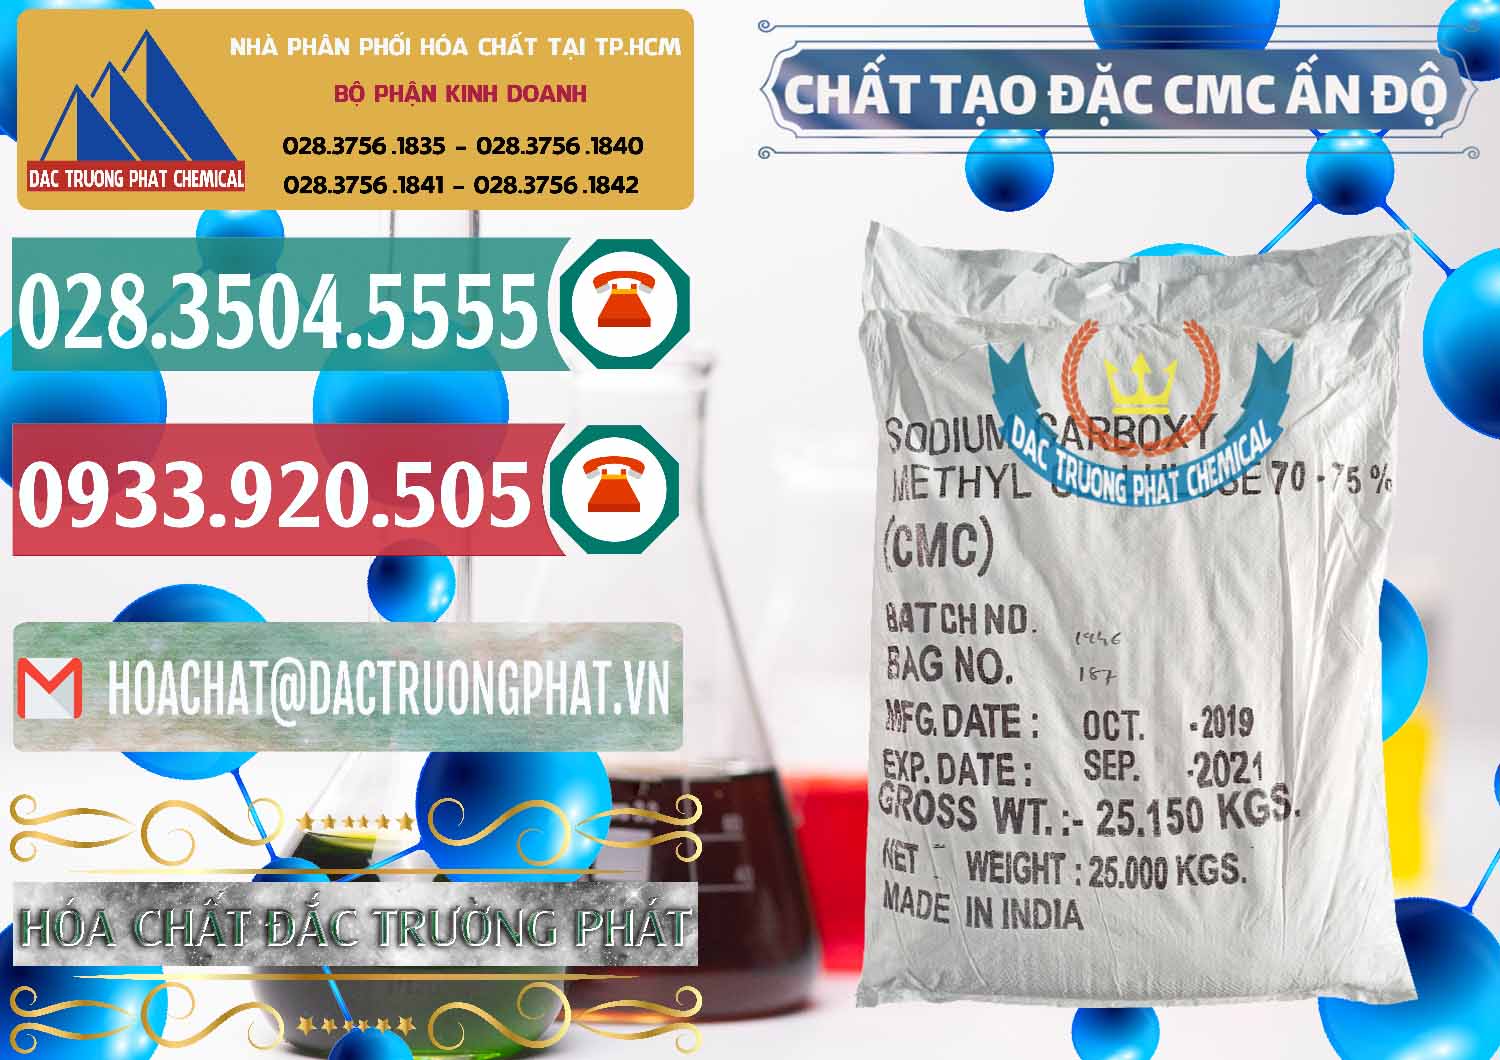 Đơn vị bán & cung ứng Chất Tạo Đặc CMC - Carboxyl Methyl Cellulose Ấn Độ India - 0044 - Nhà cung cấp và bán hóa chất tại TP.HCM - muabanhoachat.vn